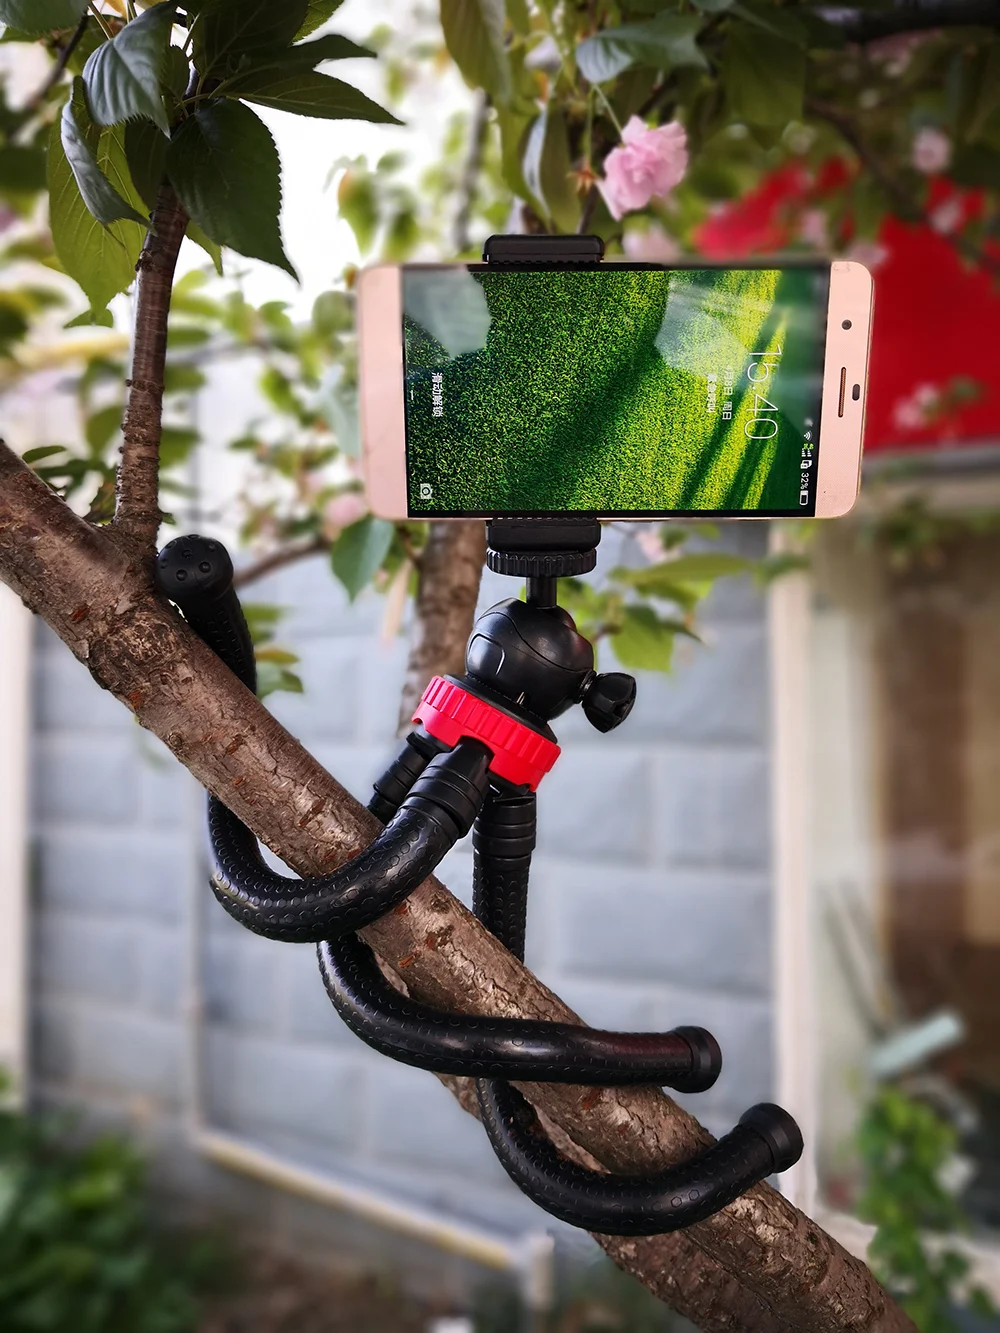 Мини Гибкий штатив-Трипод Gorillapod держатель для телефона адаптер для iPhone X Мобильный телефон Смартфон DSLR камера Gopro Hero